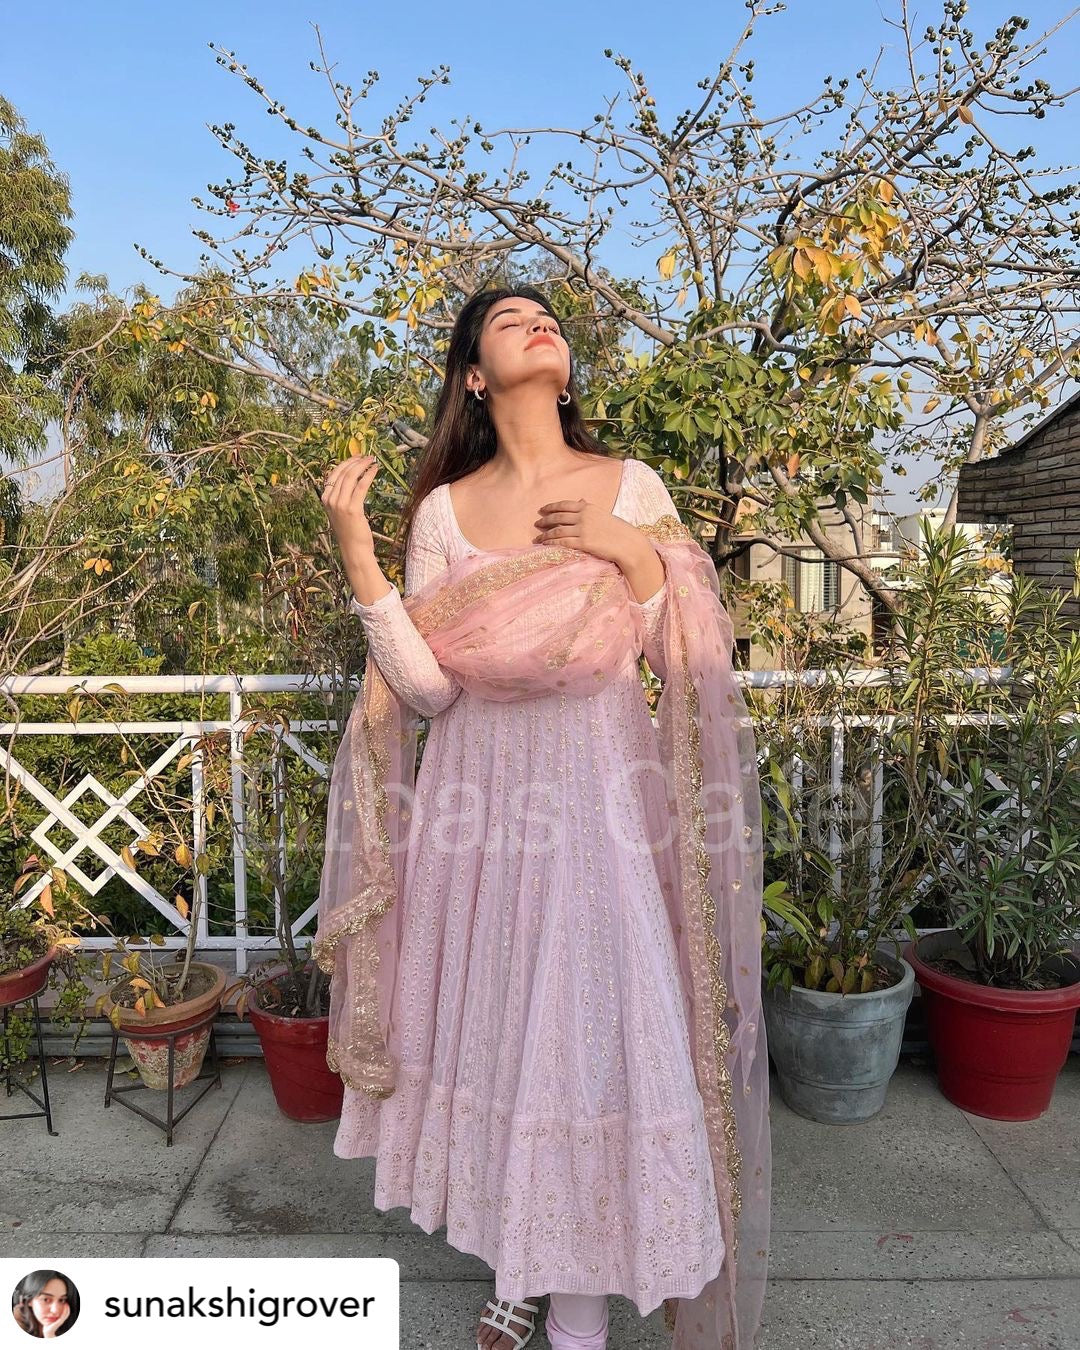 Sonakshi Grover In Our Baby Pink Lakhnavi Flared Anarkali